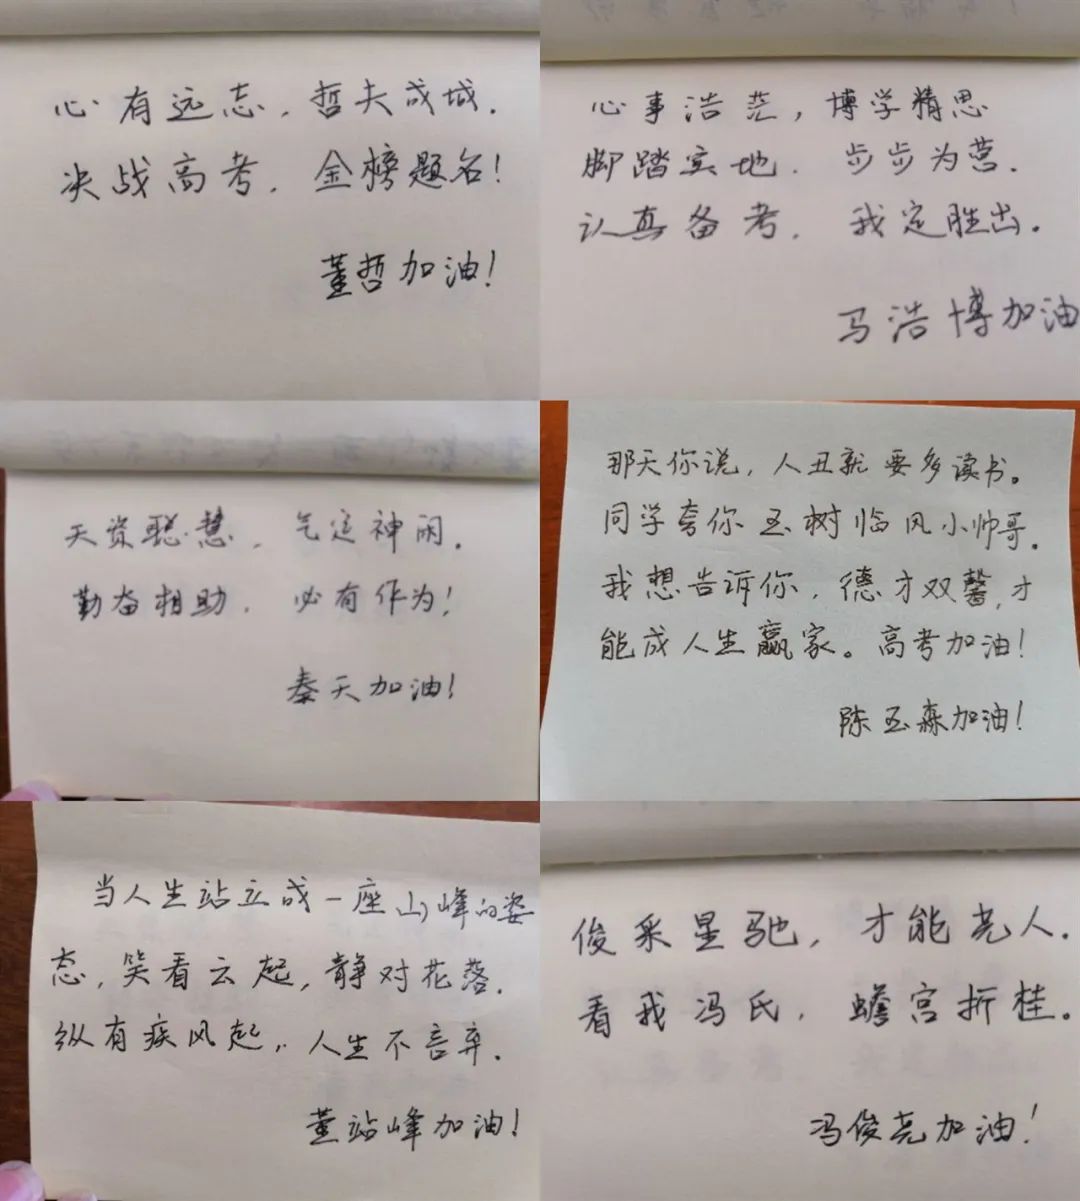 有心菏泽一毕业班老师为56名学生写藏头诗寄语